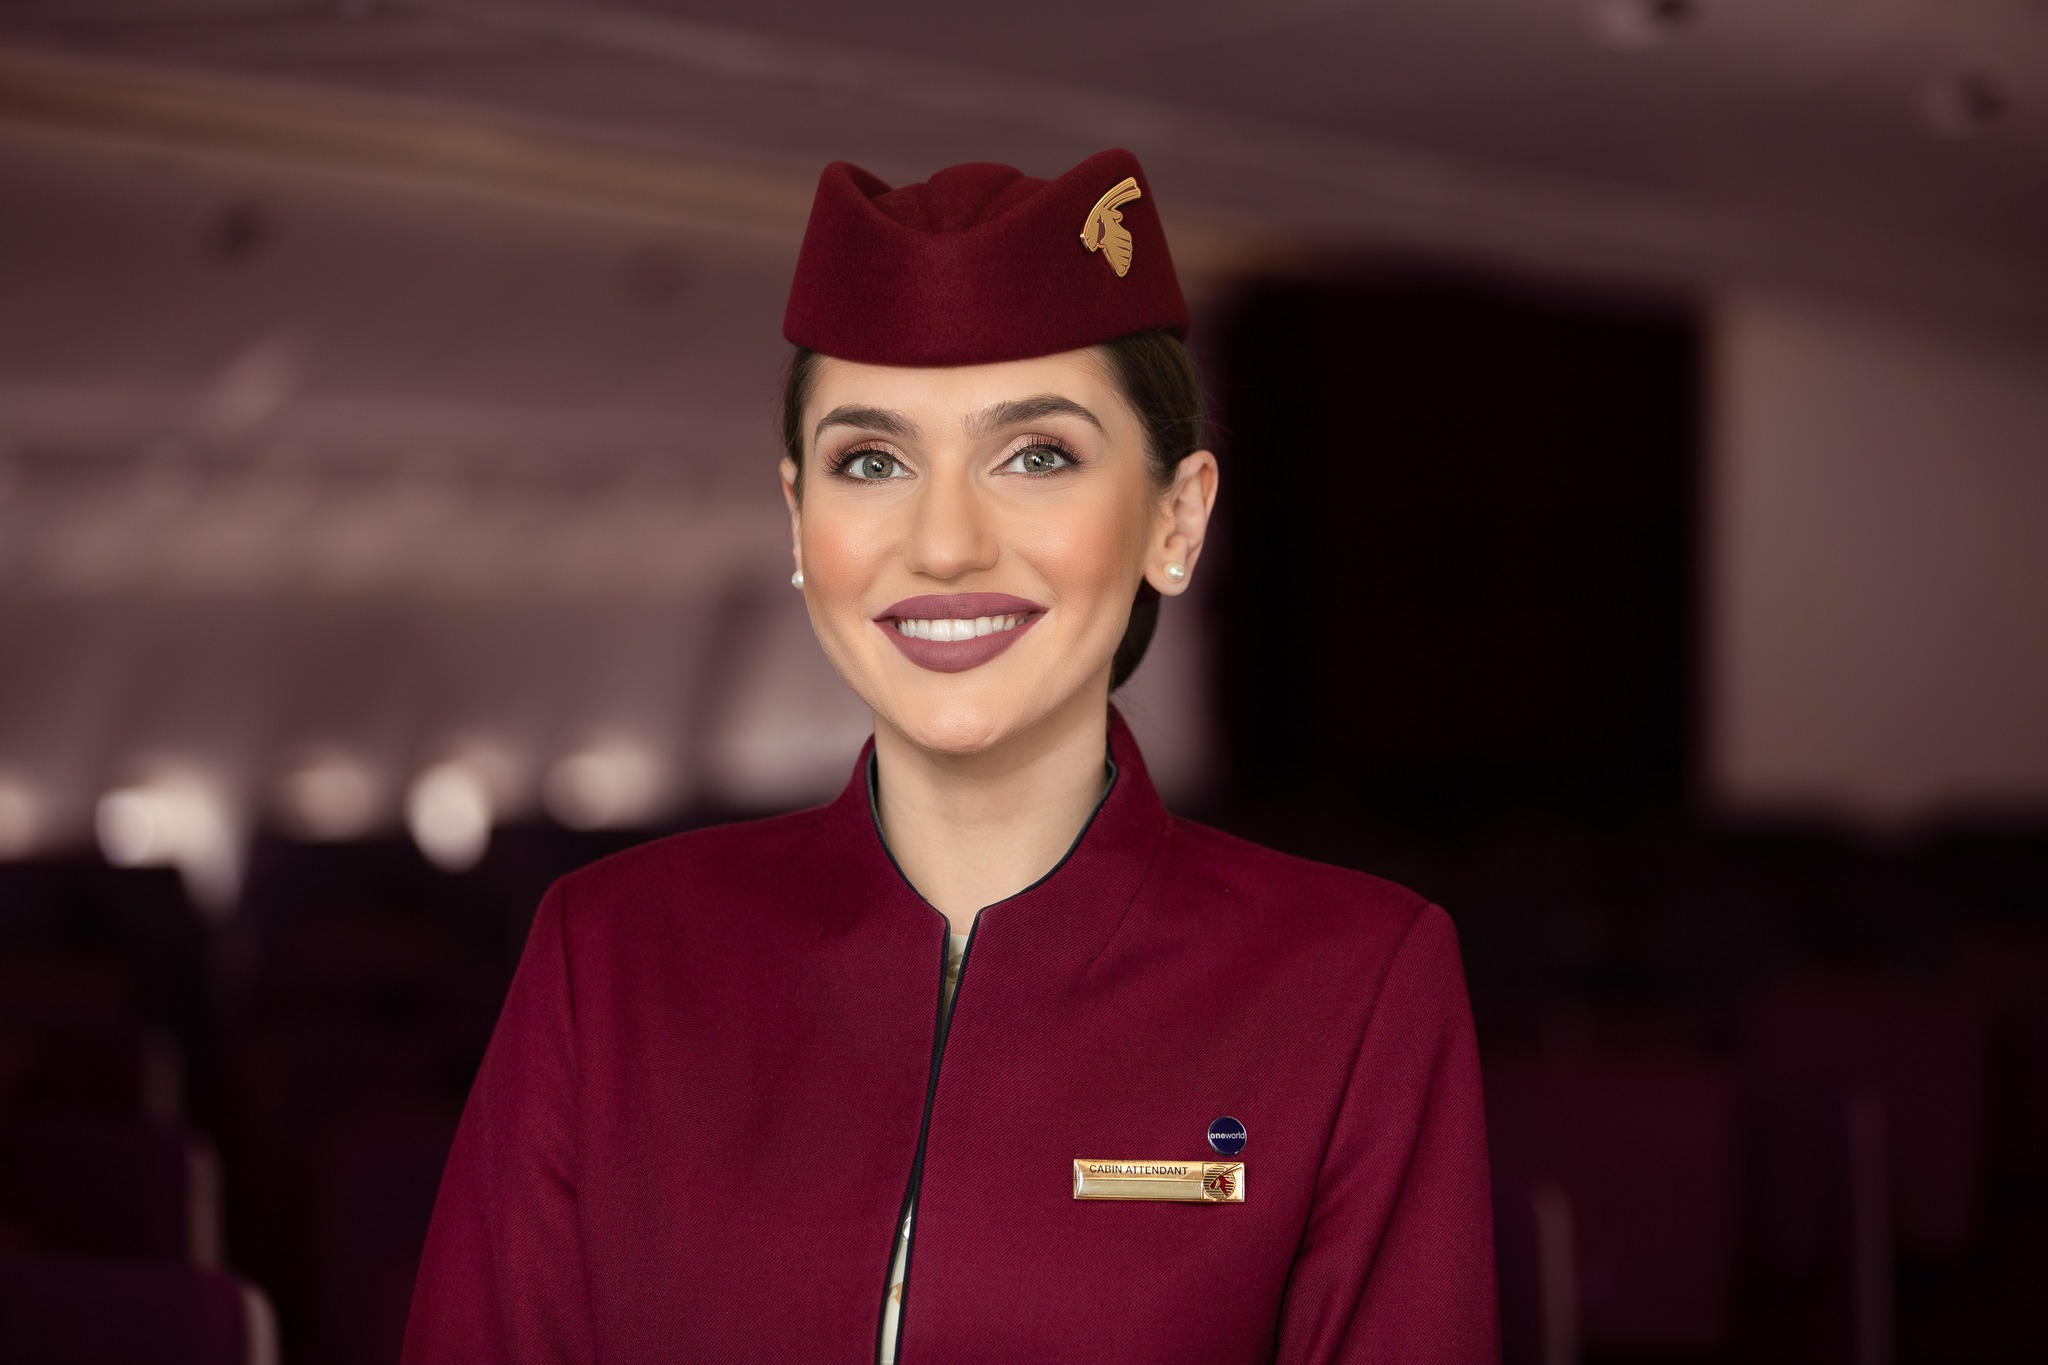 qatar flight attendant salary